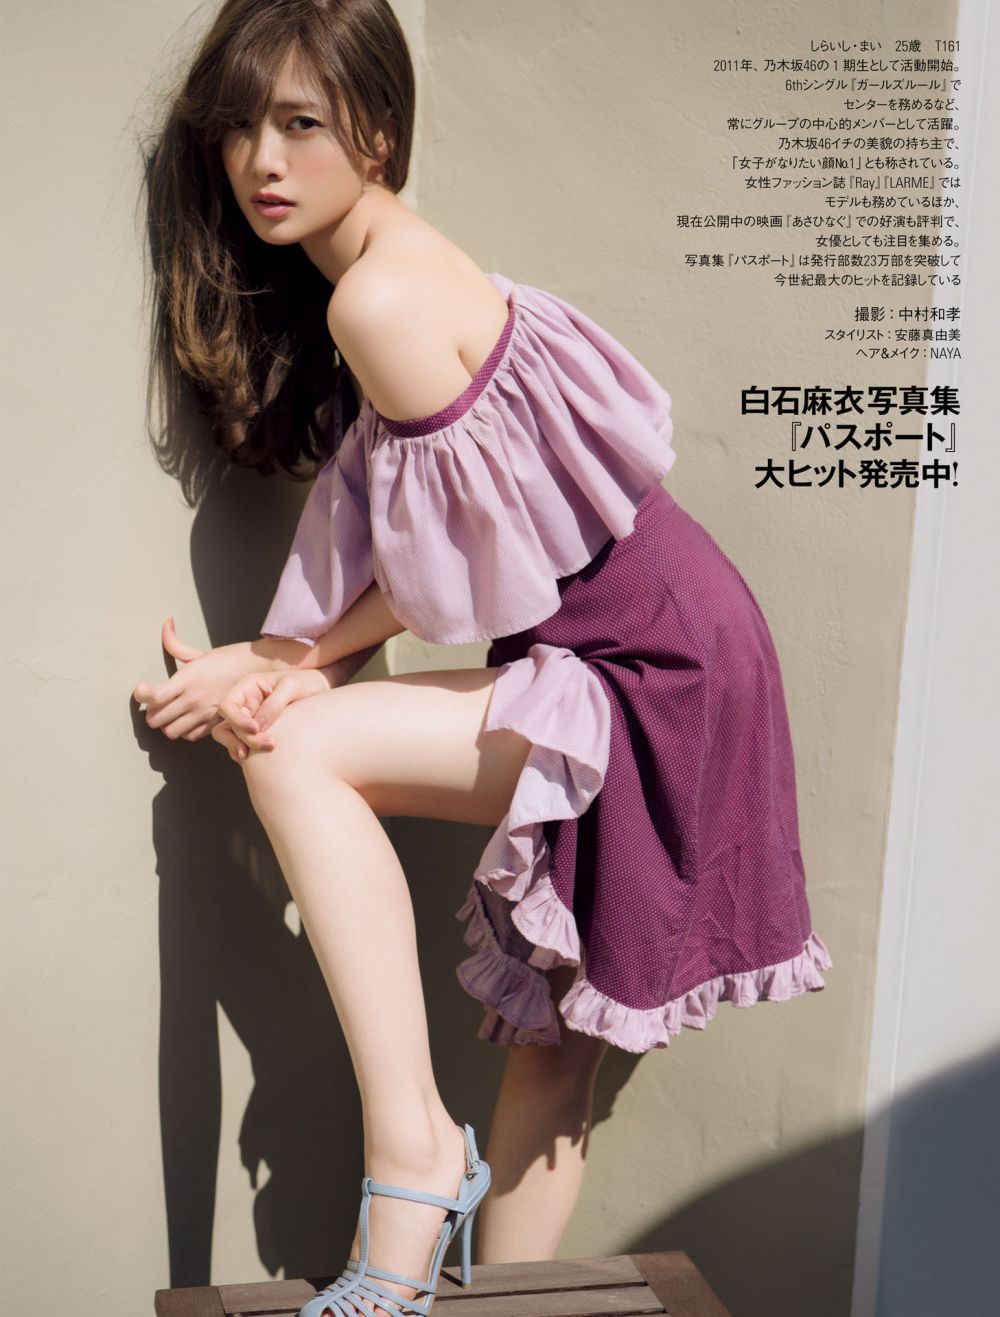 Mai Shiraishi Sexy and Hottest Photos , Latest Pics